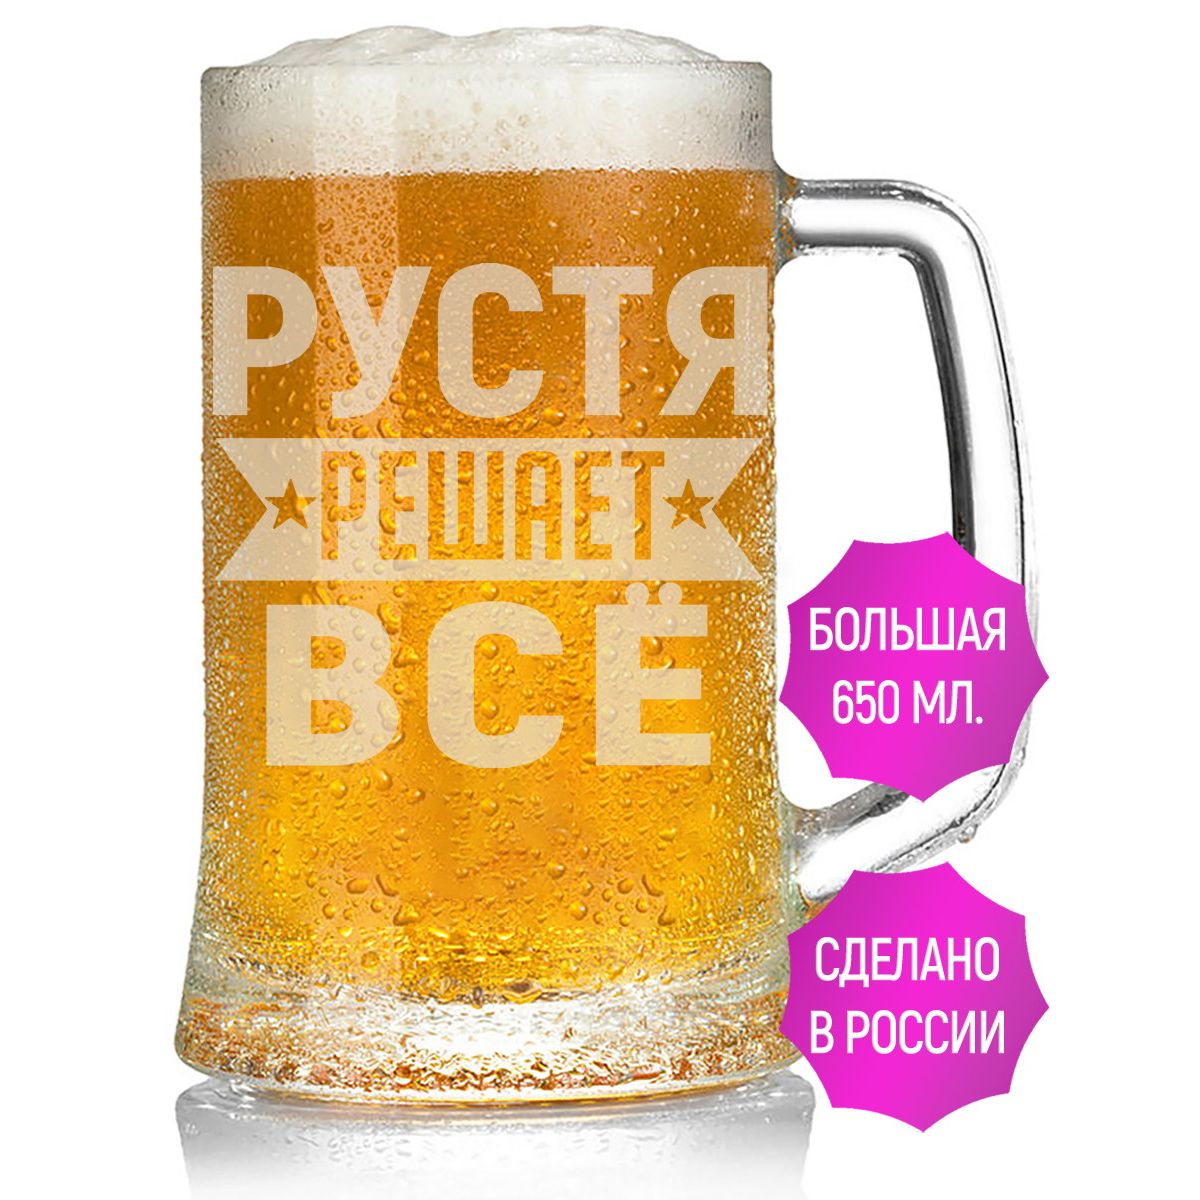 Бокал AV Podarki Рустя решает всё емкостью 650 мл для пива.